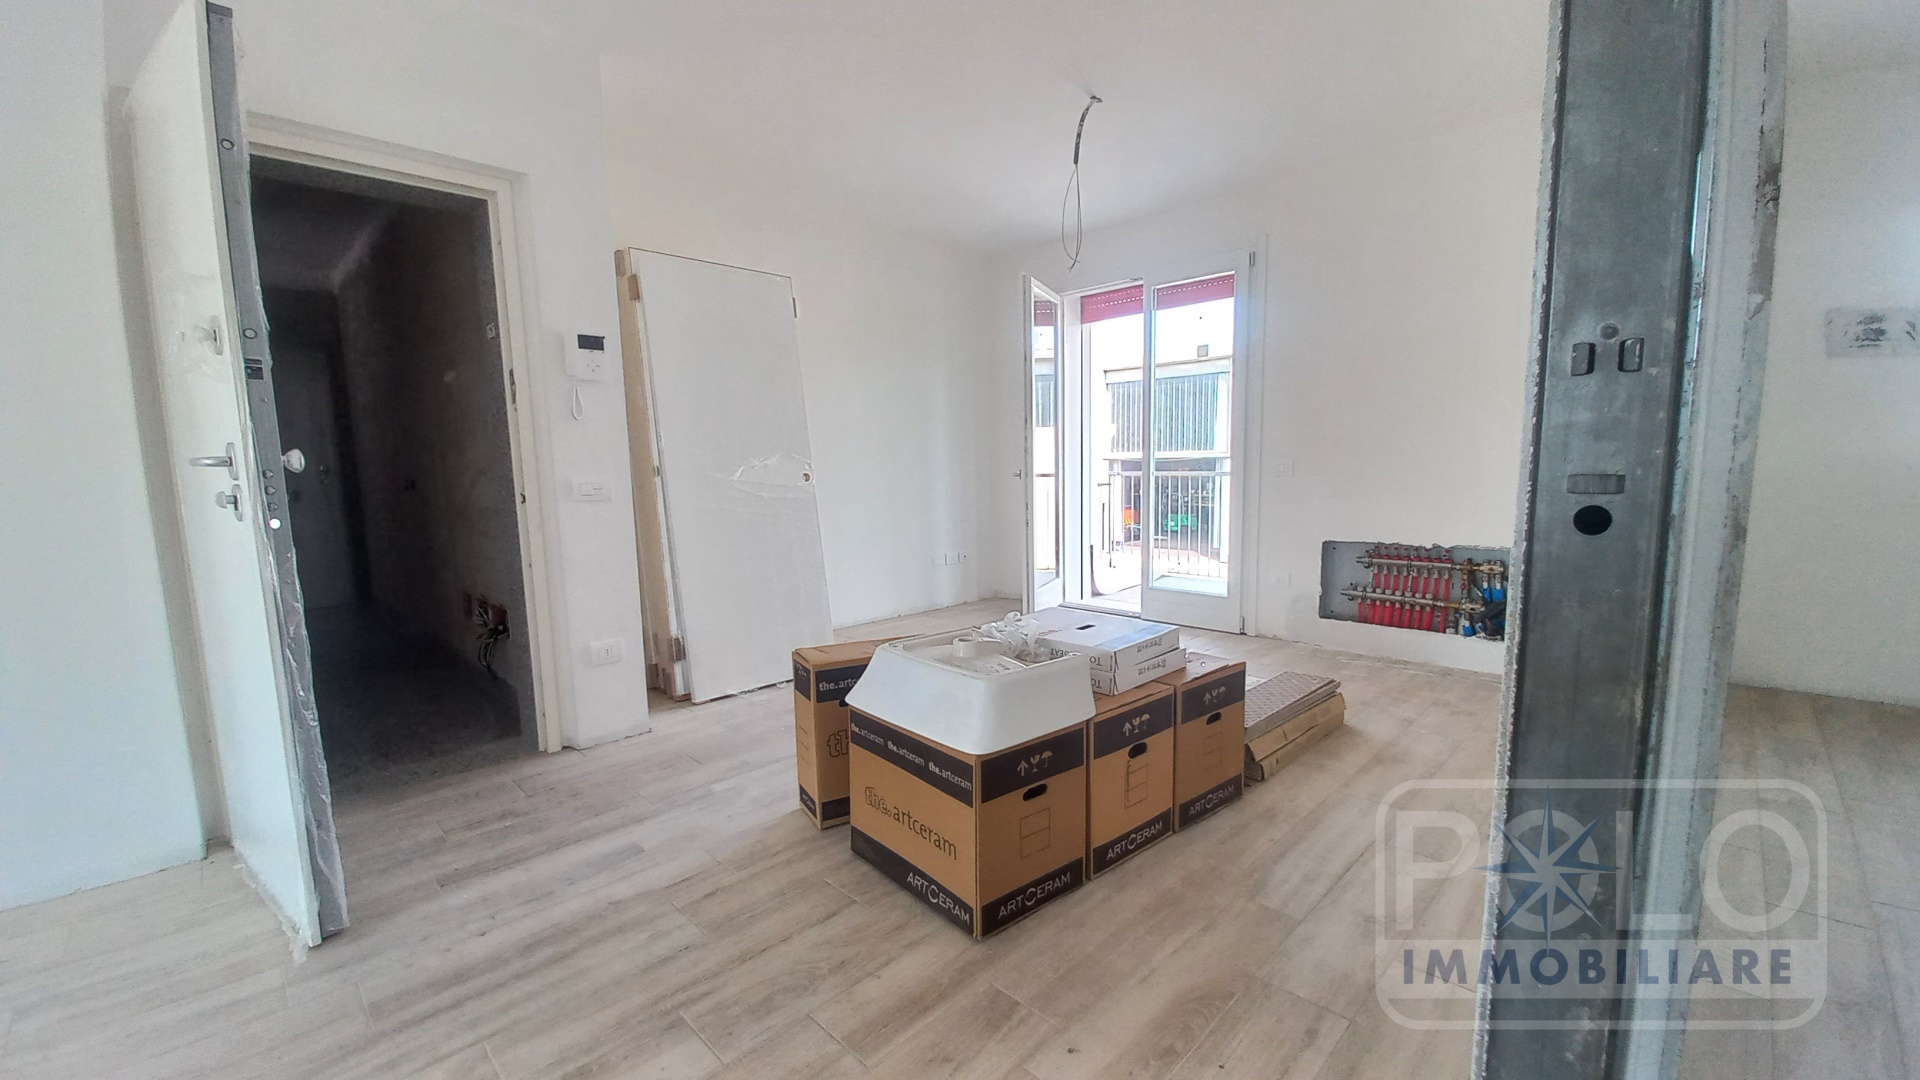 Appartamento in vendita a Lavagno, 4 locali, prezzo € 225.000 | PortaleAgenzieImmobiliari.it